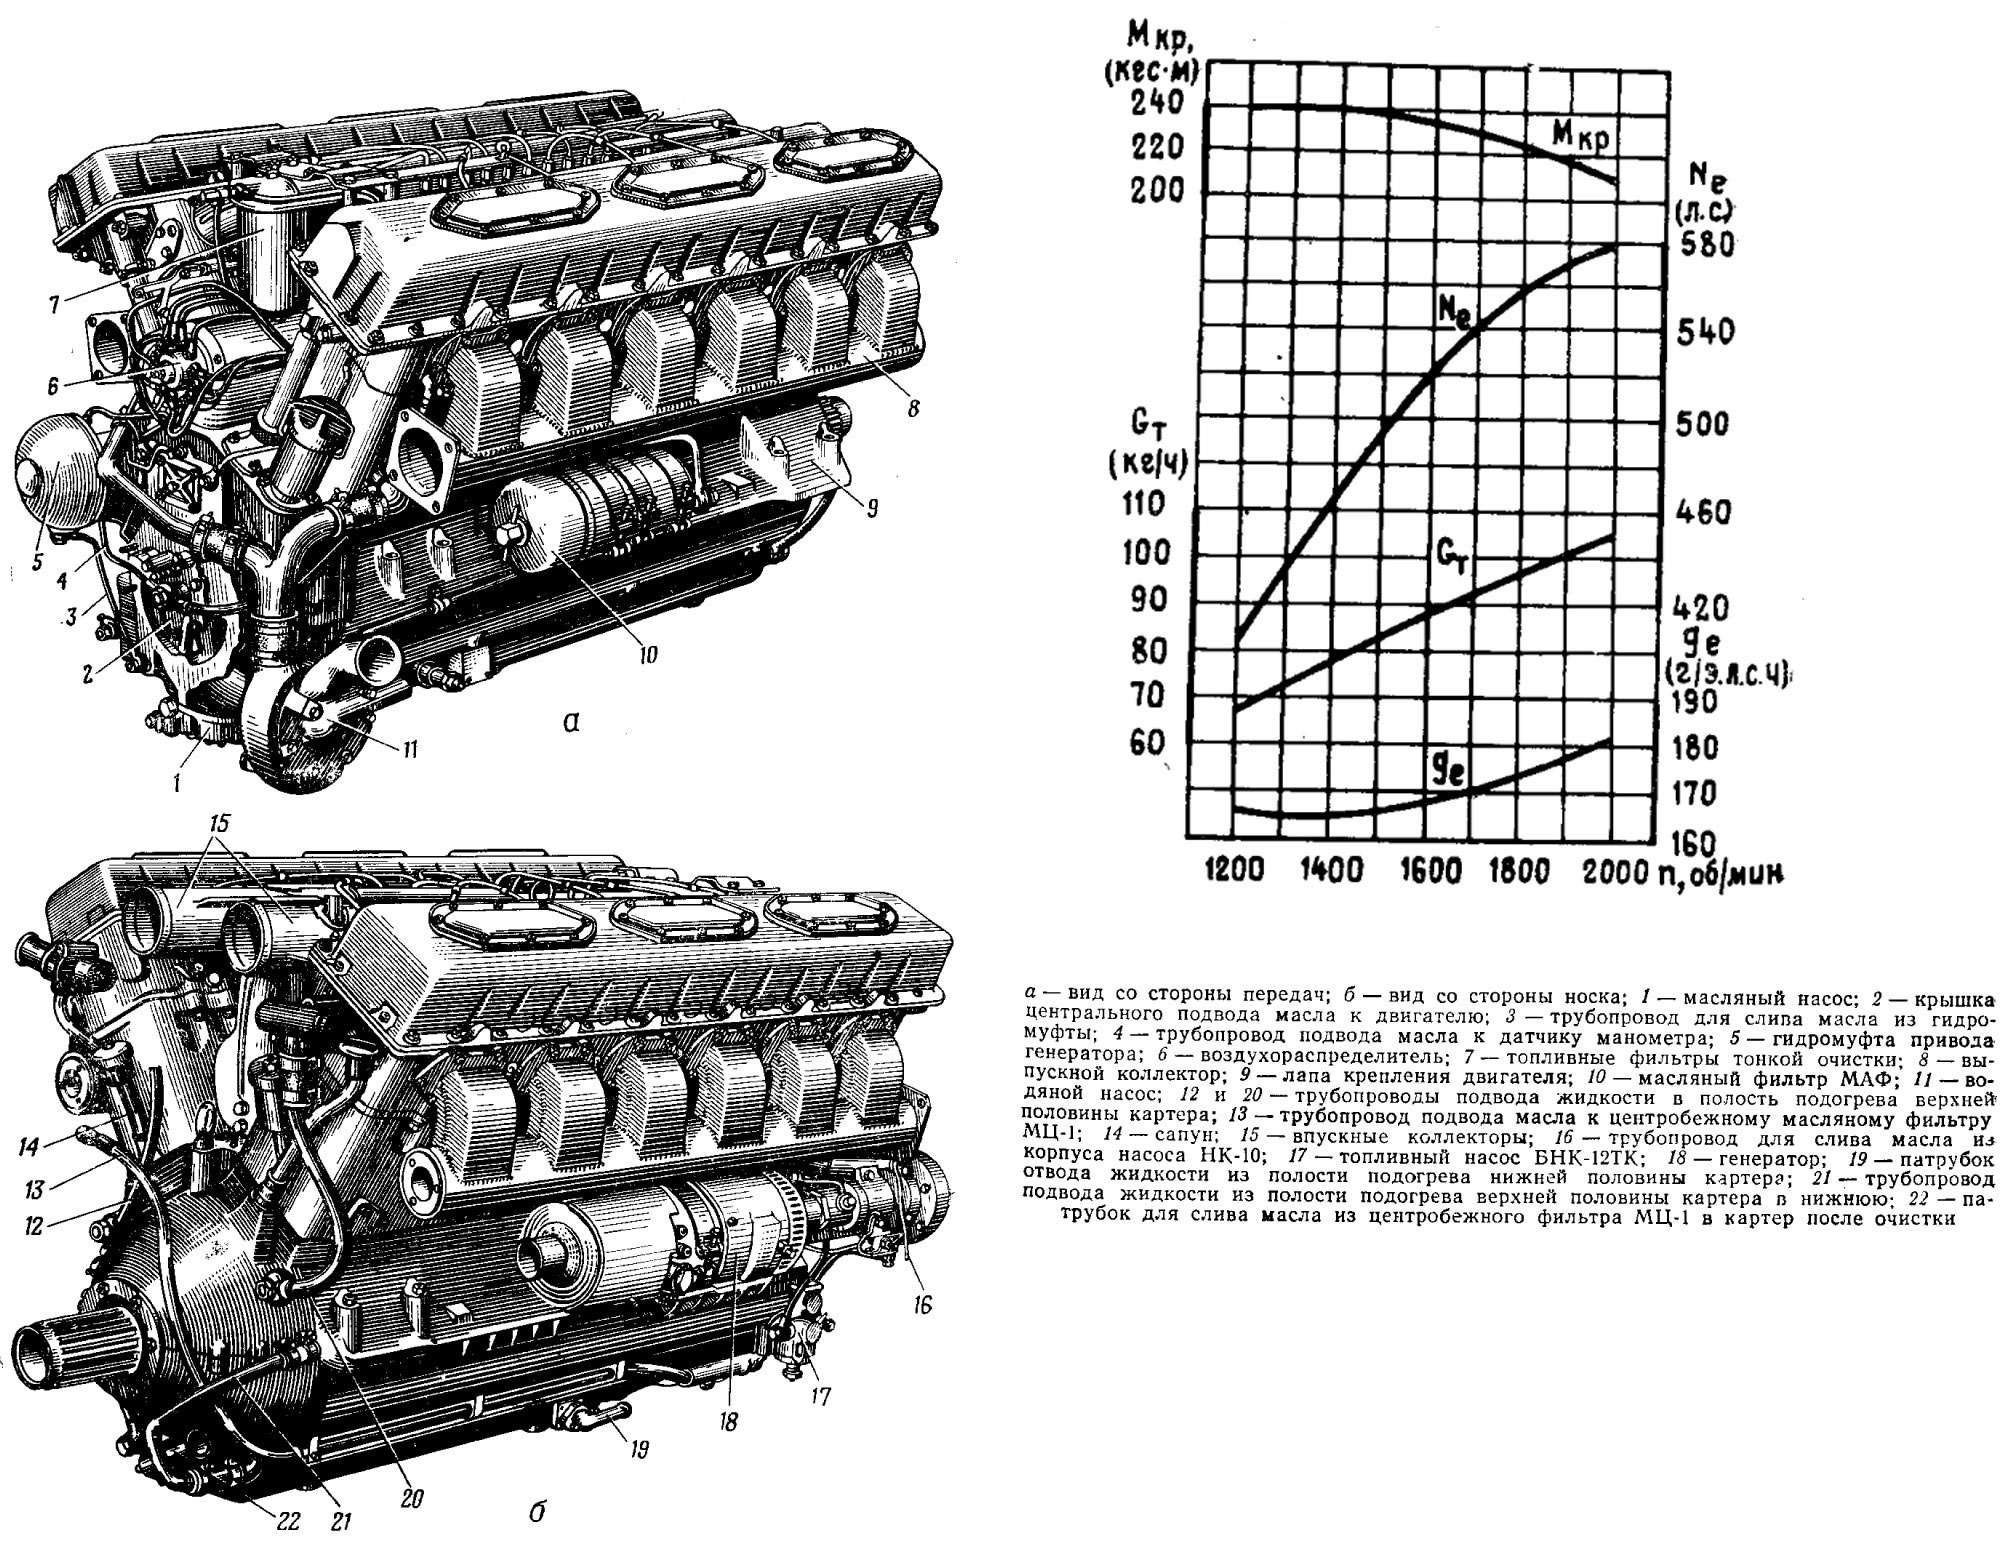 580-сильный двигатель В-55В применялся на танках Т-62, производимых с 1961 по 1975 год. Всего выпущено порядка 20 000 машин – самих танков и различной техники, созданной на их базе.